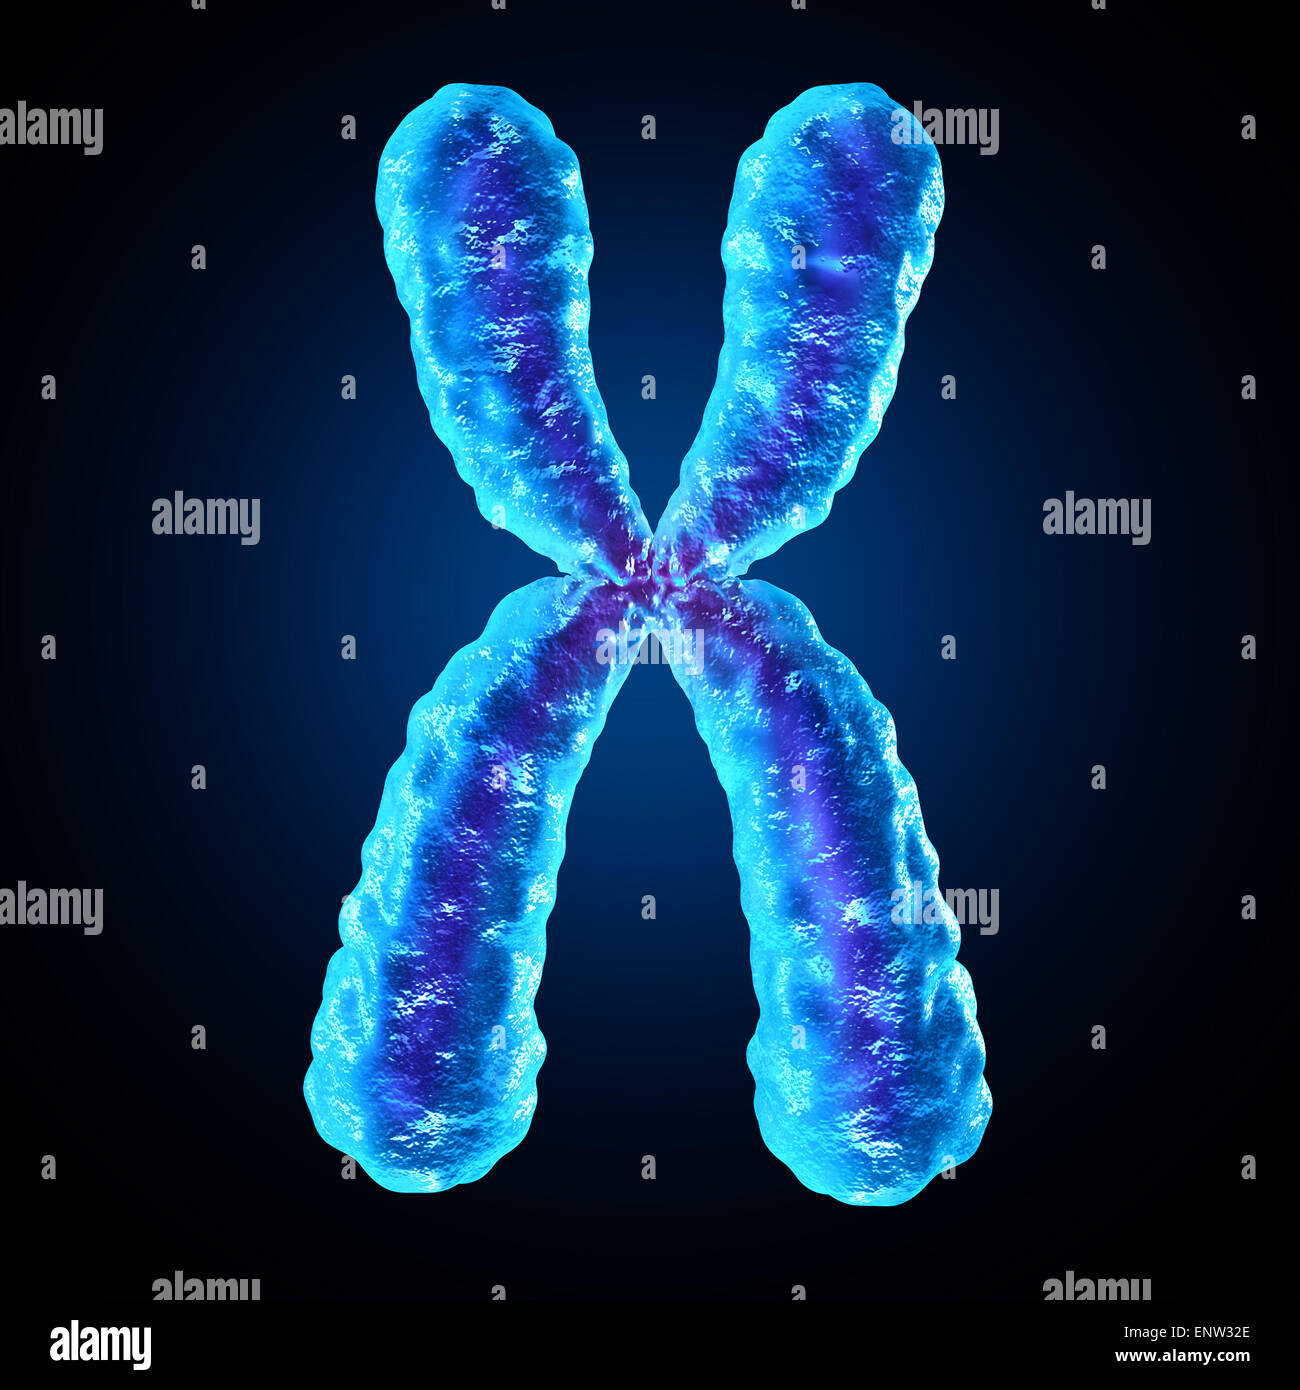 Chromosom als eine menschliche Biologie x Struktur mit Dna genetische Informationen als medizinische Symbol für Gen-Therapie oder Mikrobiologie-Genetik-Forschung. Stockfoto